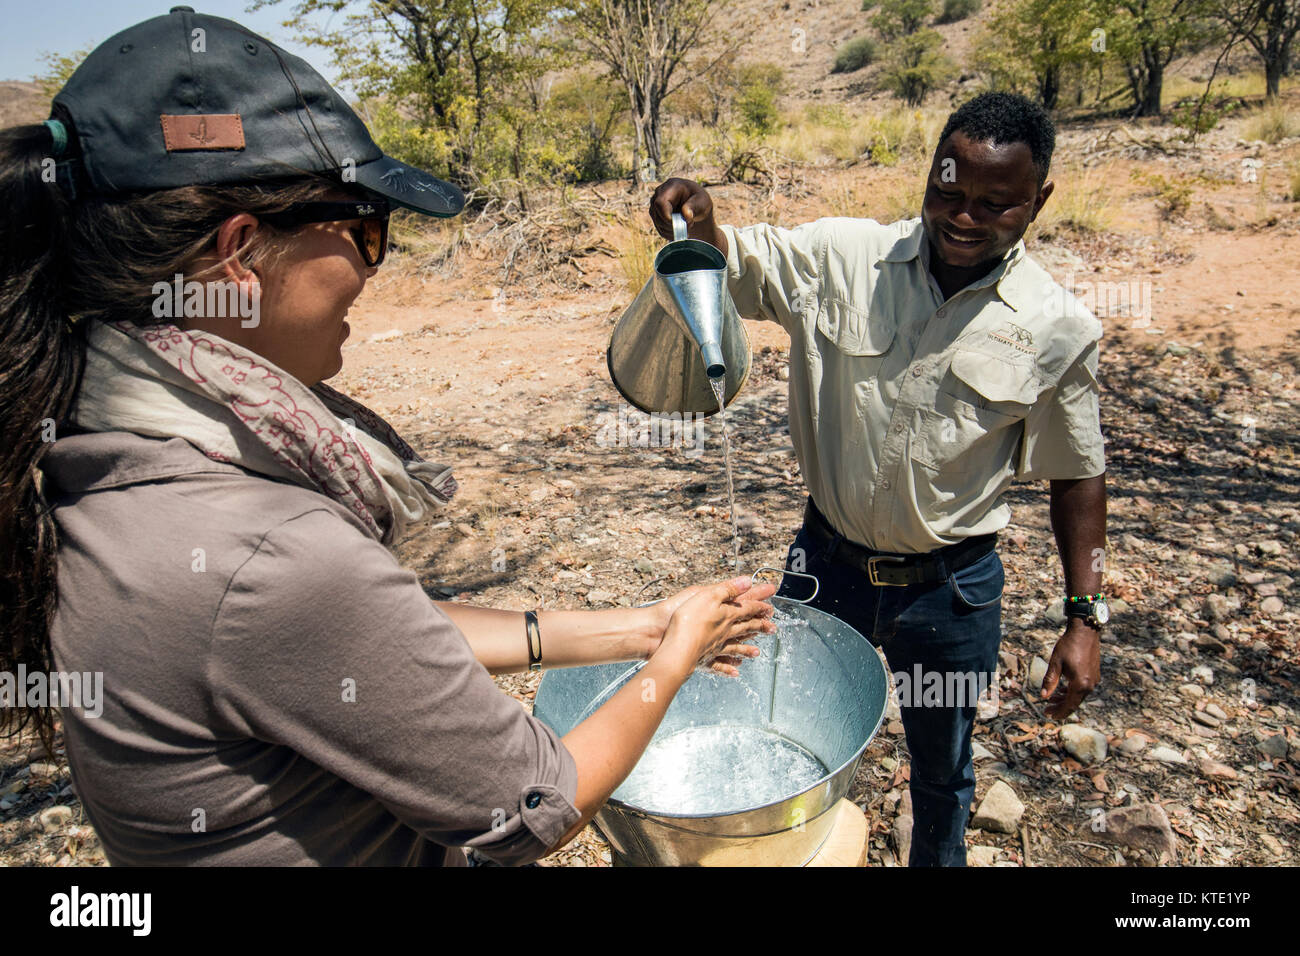 Frau waschen ihre Hände in Zinn Becken - Huab unter Leinwand, Damaraland, Namibia, Afrika Stockfoto